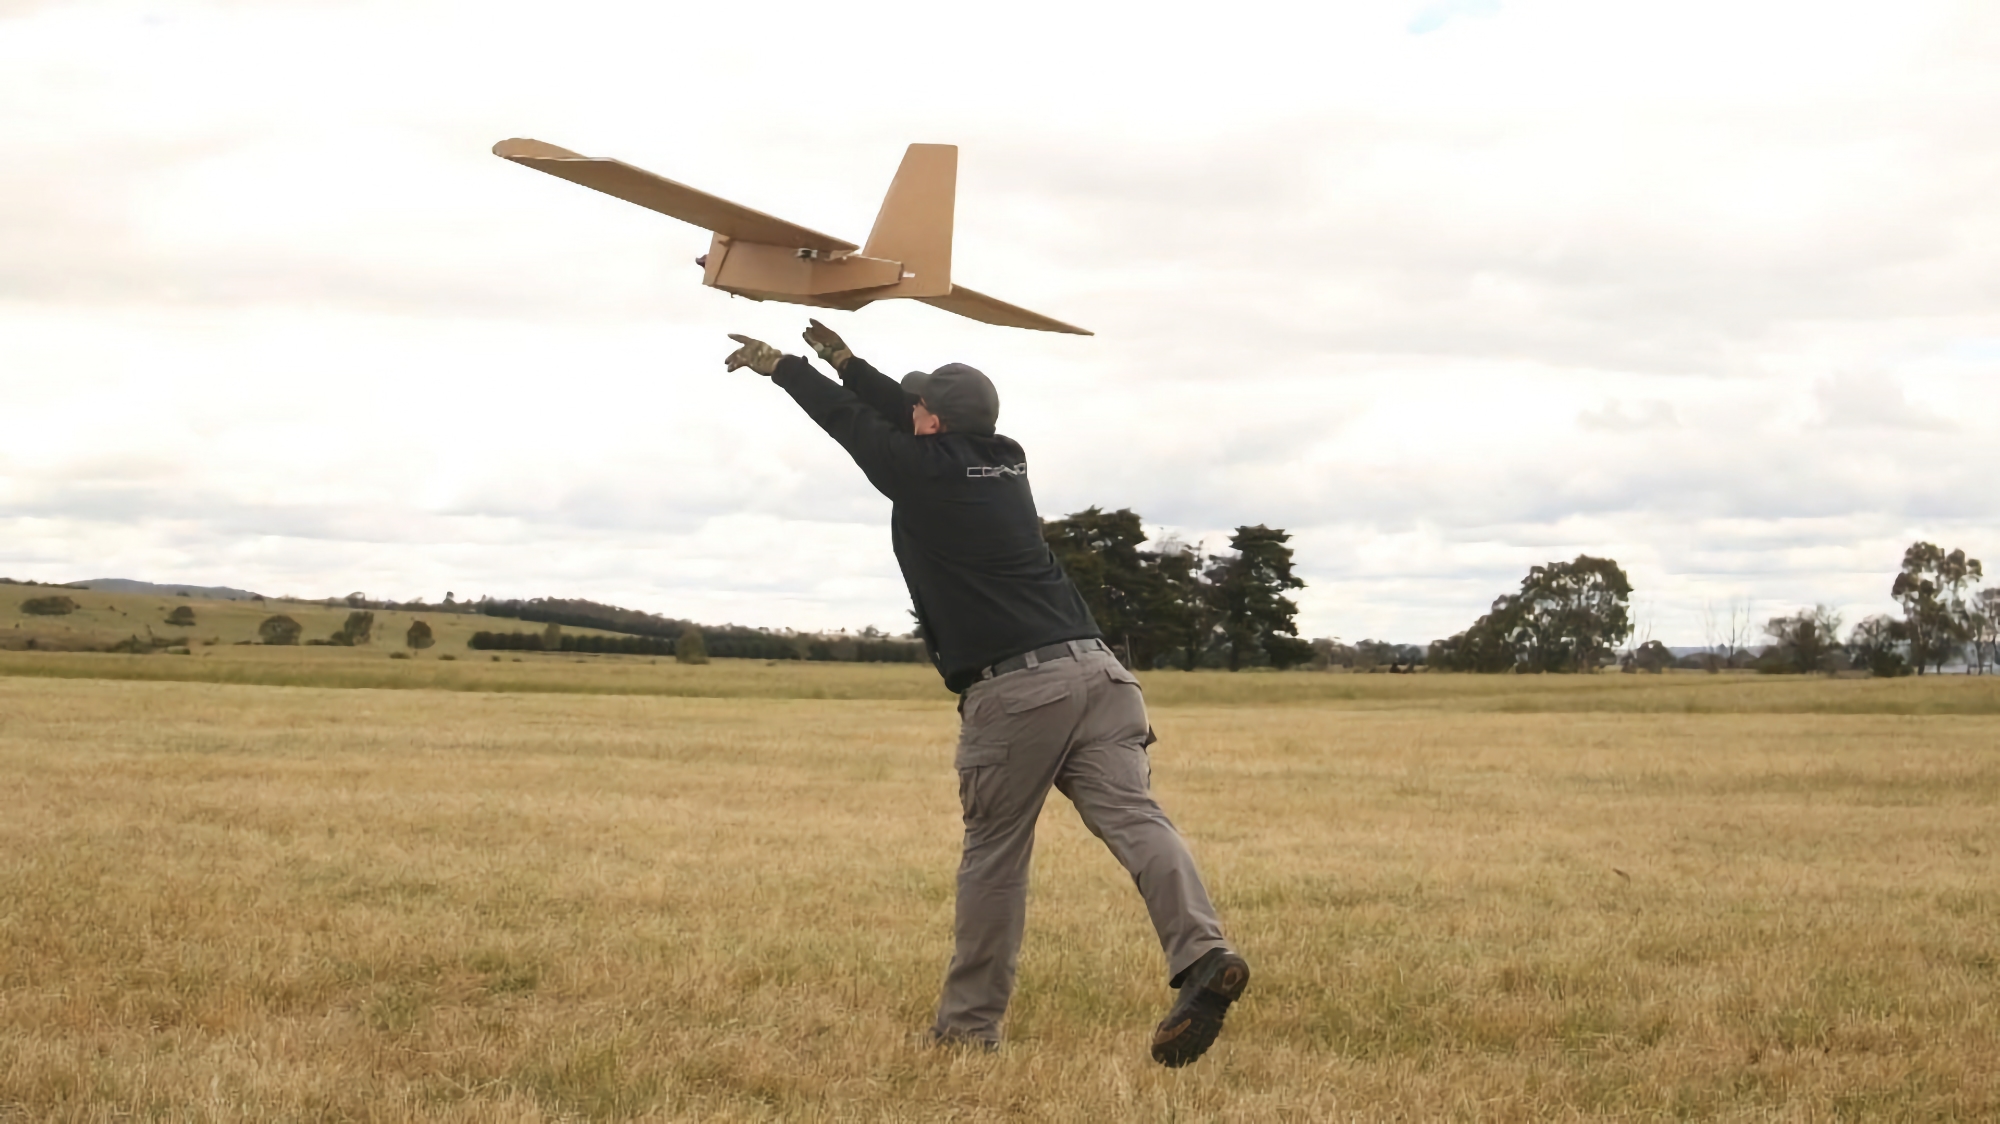 AFU używa na froncie australijskich jednorazowych dronów PPDS, są one wykonane z kartonu i mogą przenosić ładunek do 5 kg i latać na odległość 120 km